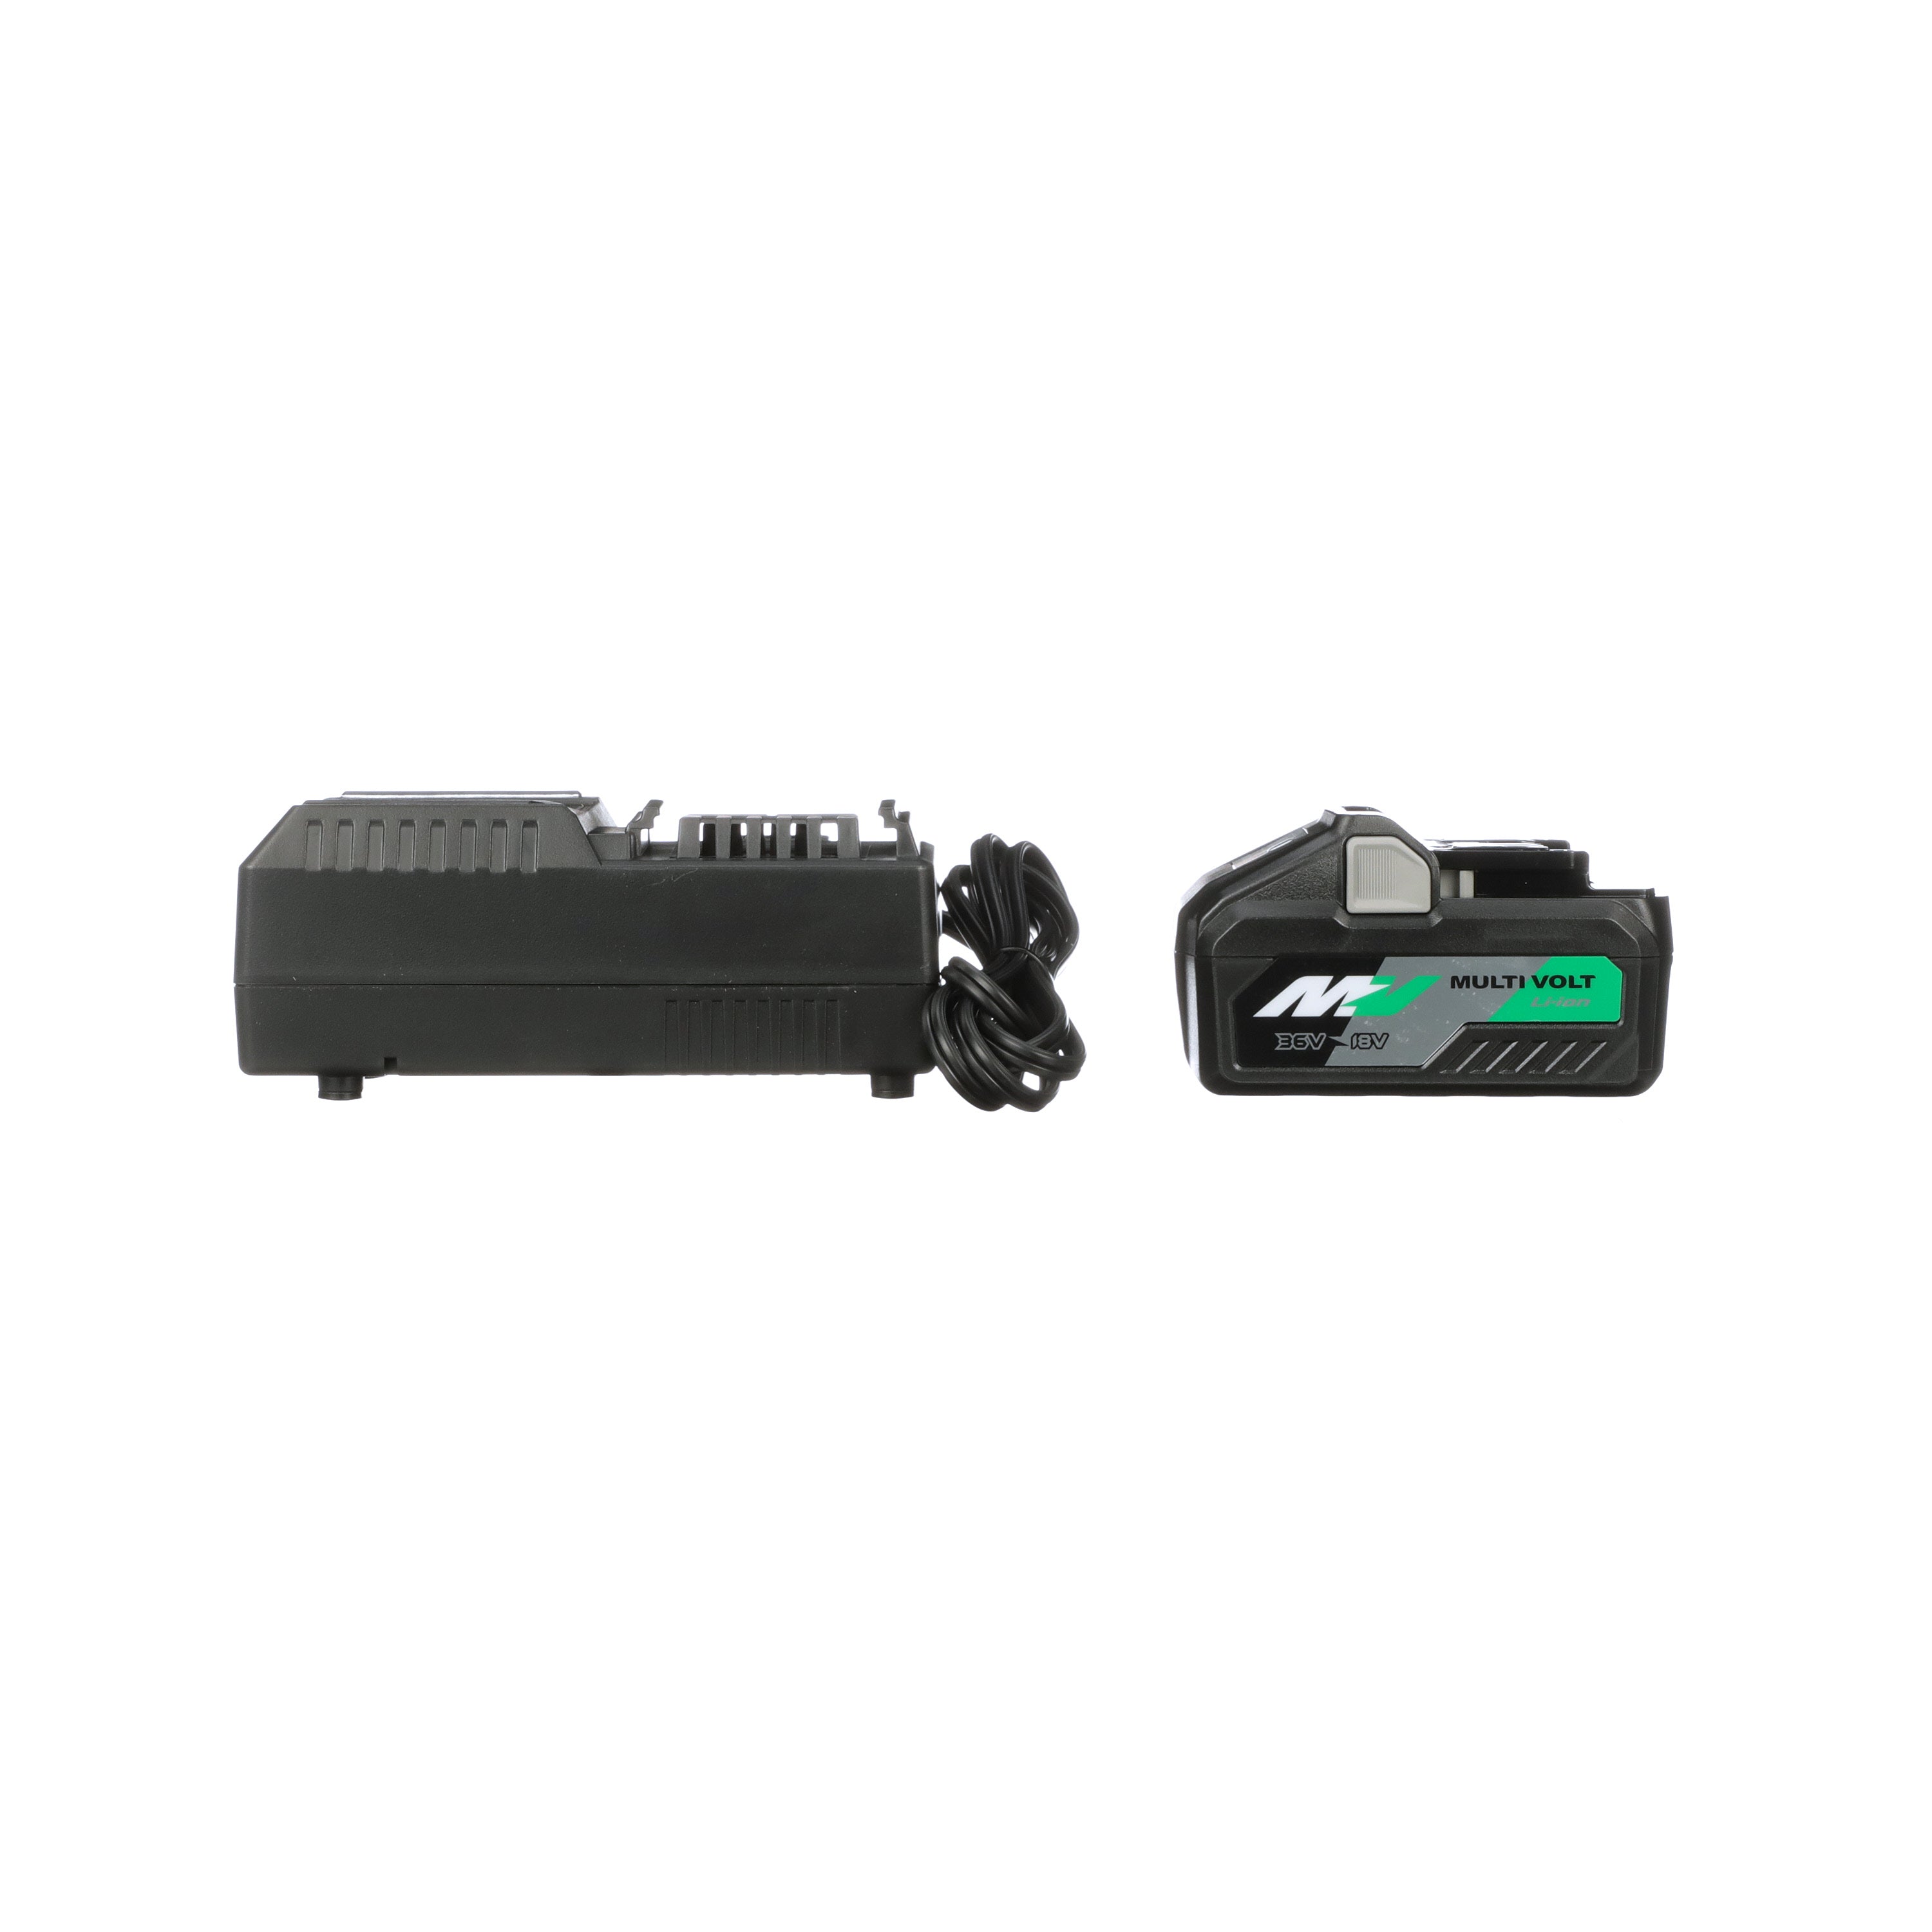 36V/18V MultiVolt™ Lithium Ion Slide Battery and Charger Starter Kit | Metabo HPT UC18YSL3B1